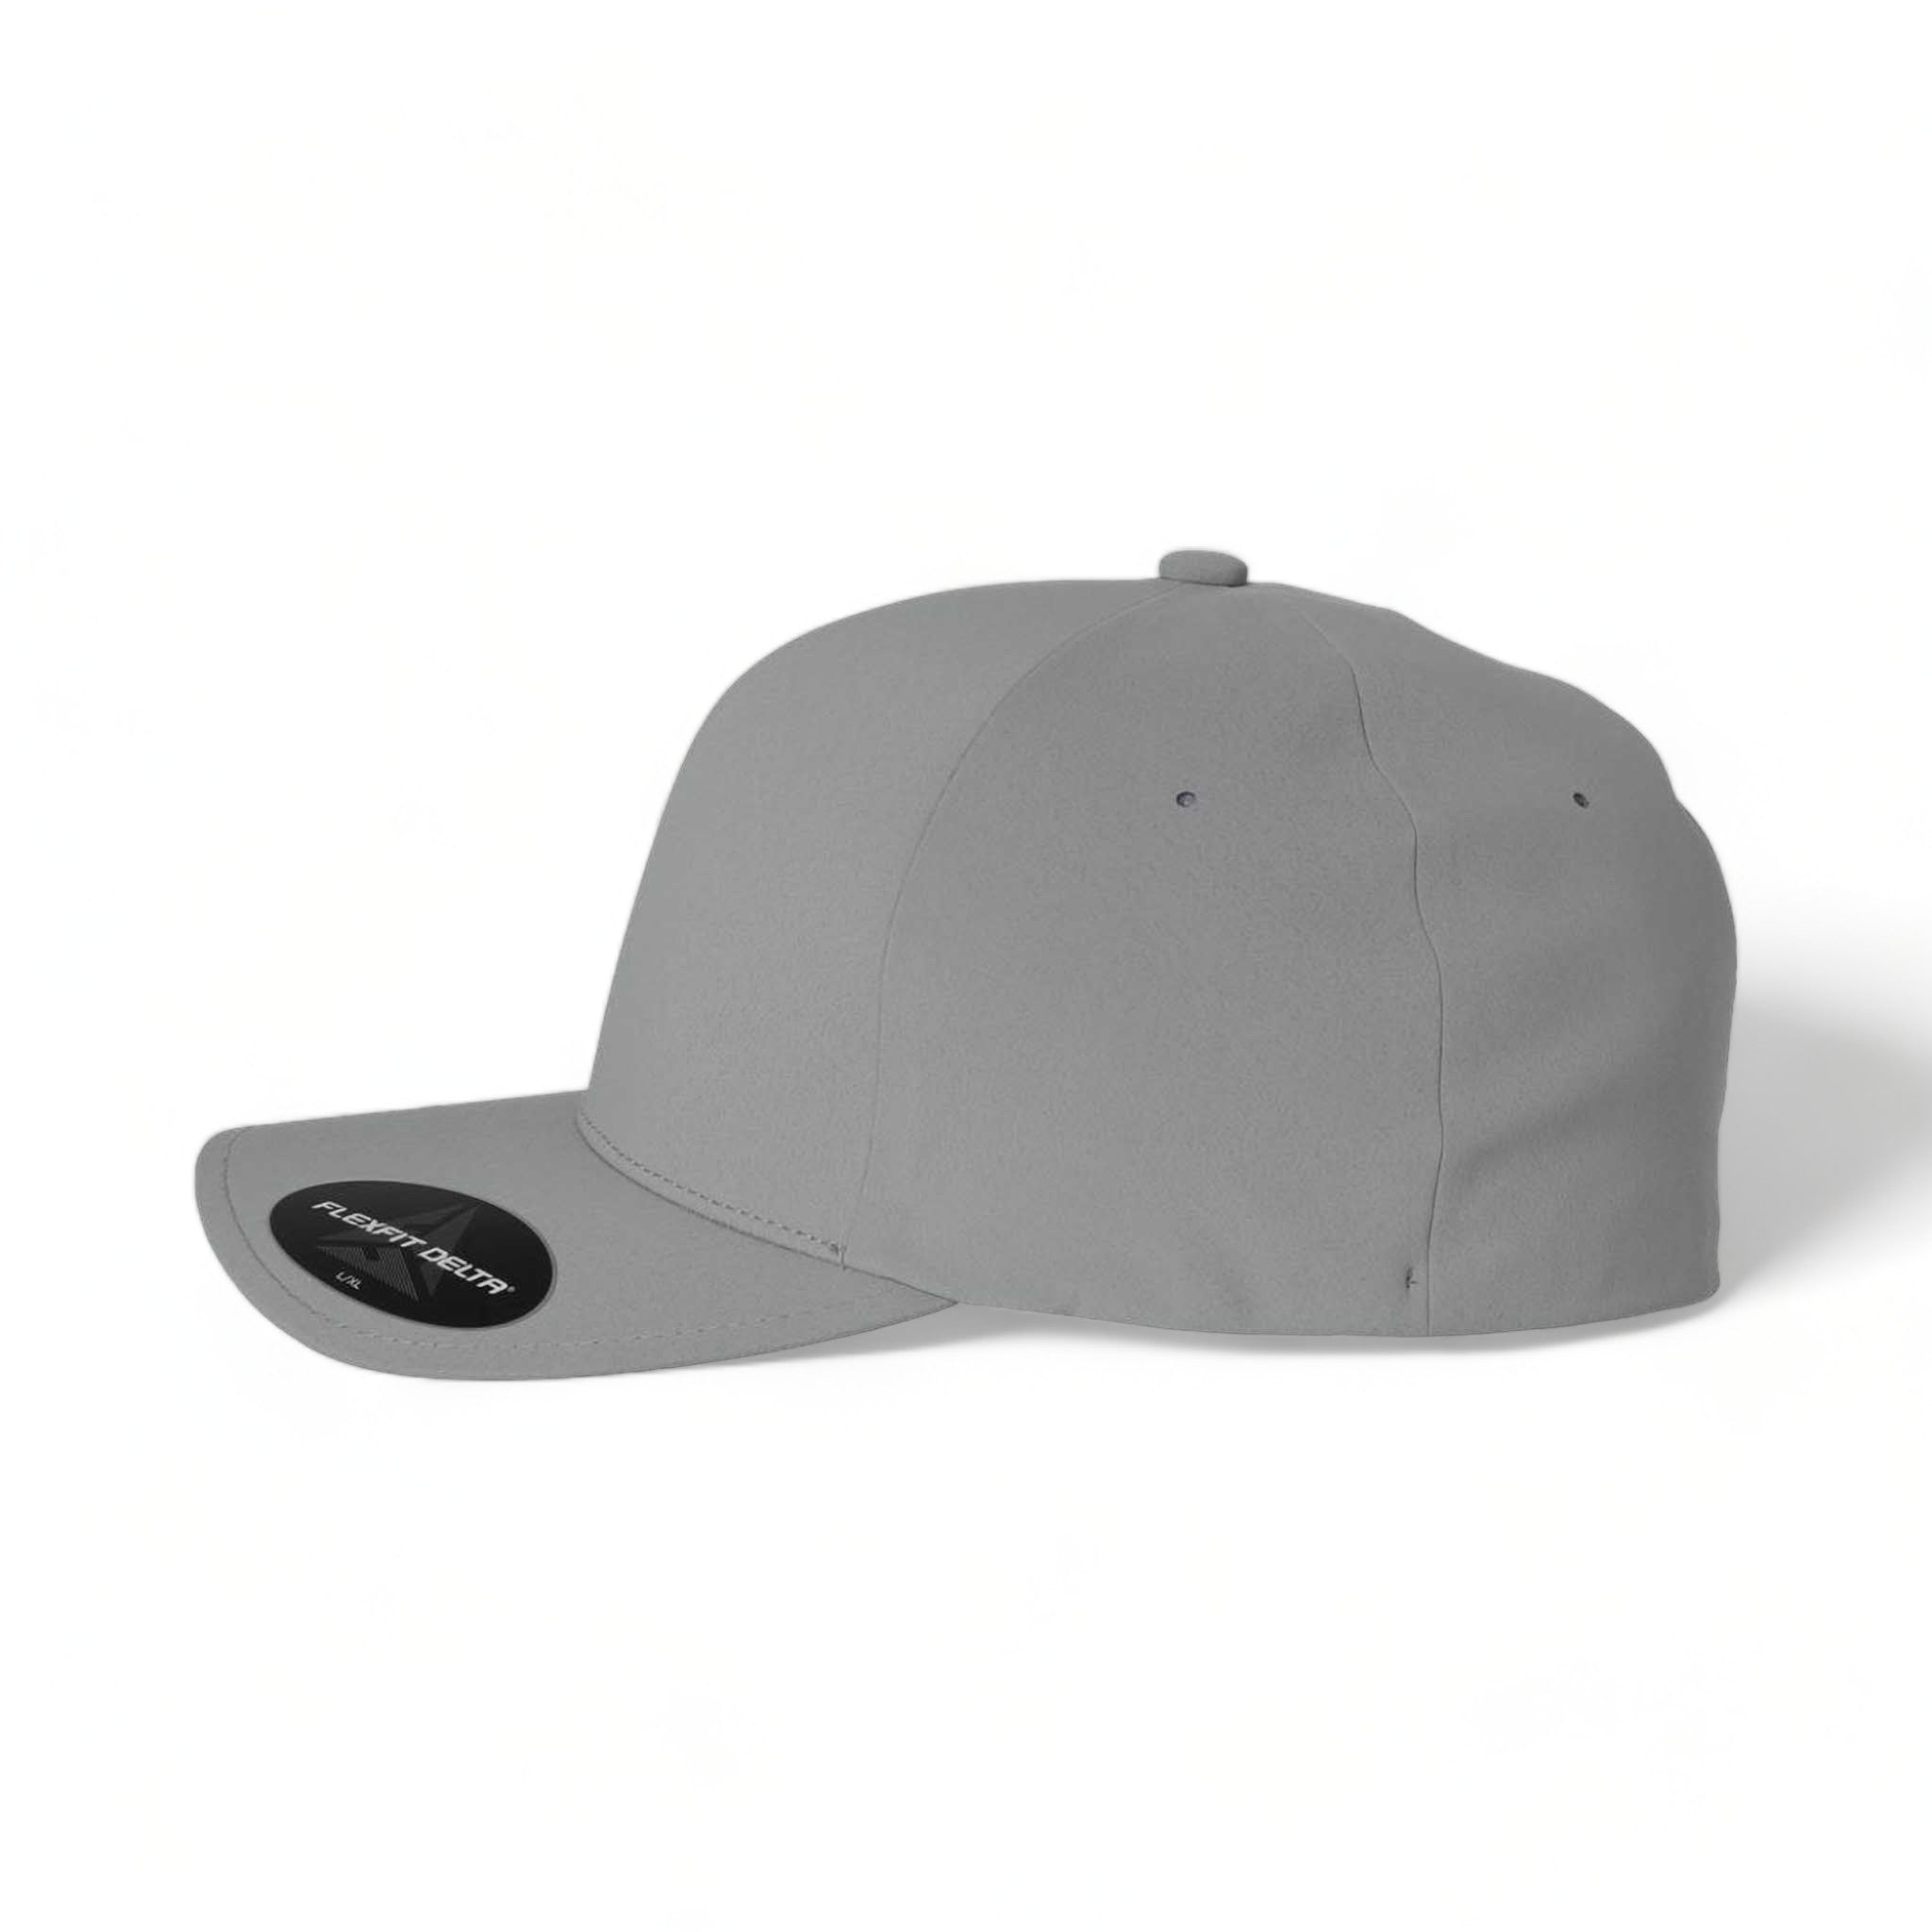 Side view of Flexfit 180 custom hat in silver